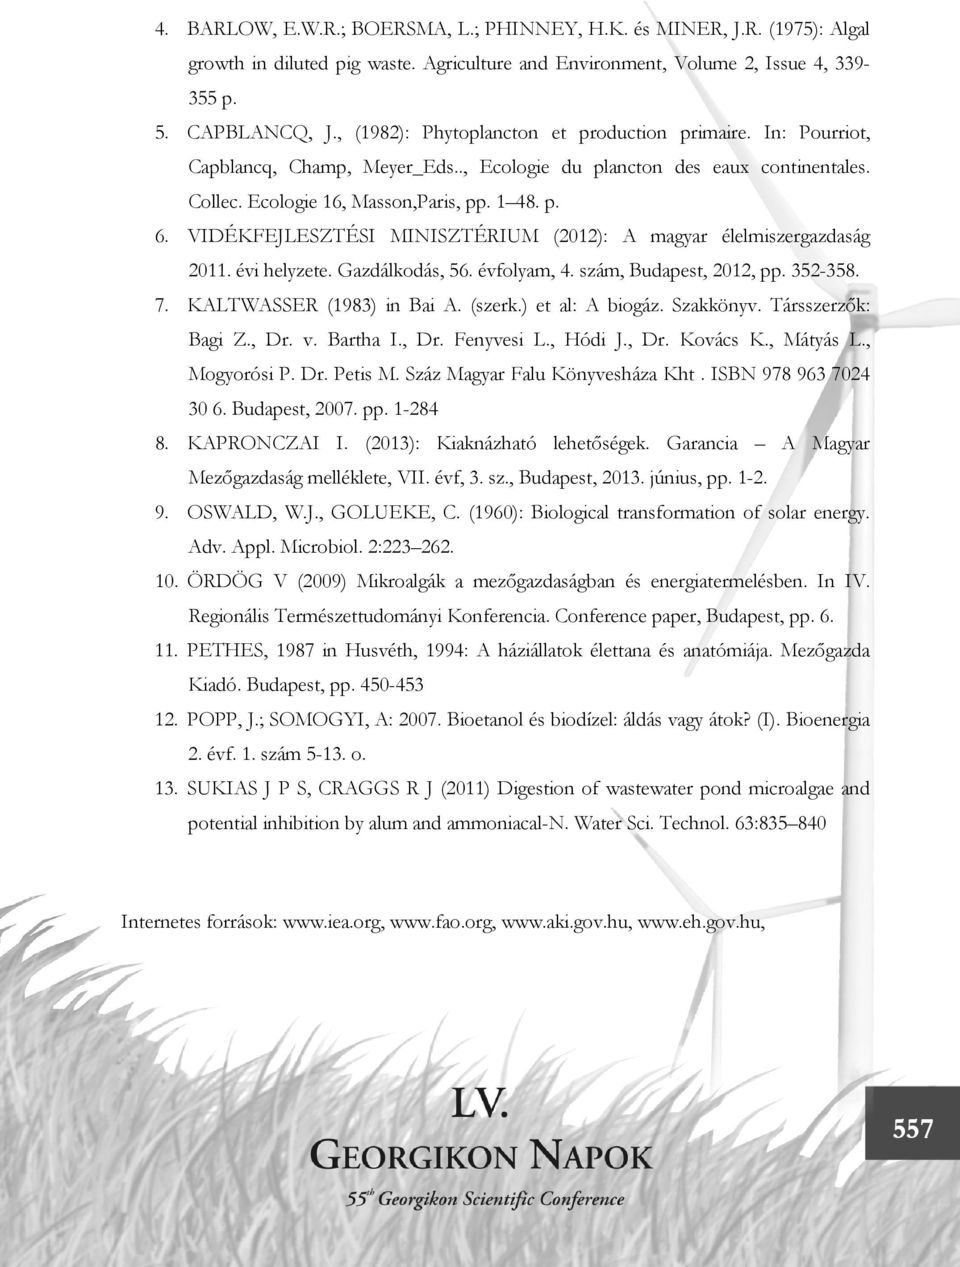 VIDÉKFEJLESZTÉSI MINISZTÉRIUM (2012): A magyar élelmiszergazdaság 2011. évi helyzete. Gazdálkodás, 56. évfolyam, 4. szám, Budapest, 2012, pp. 352-358. 7. KALTWASSER (1983) in Bai A. (szerk.